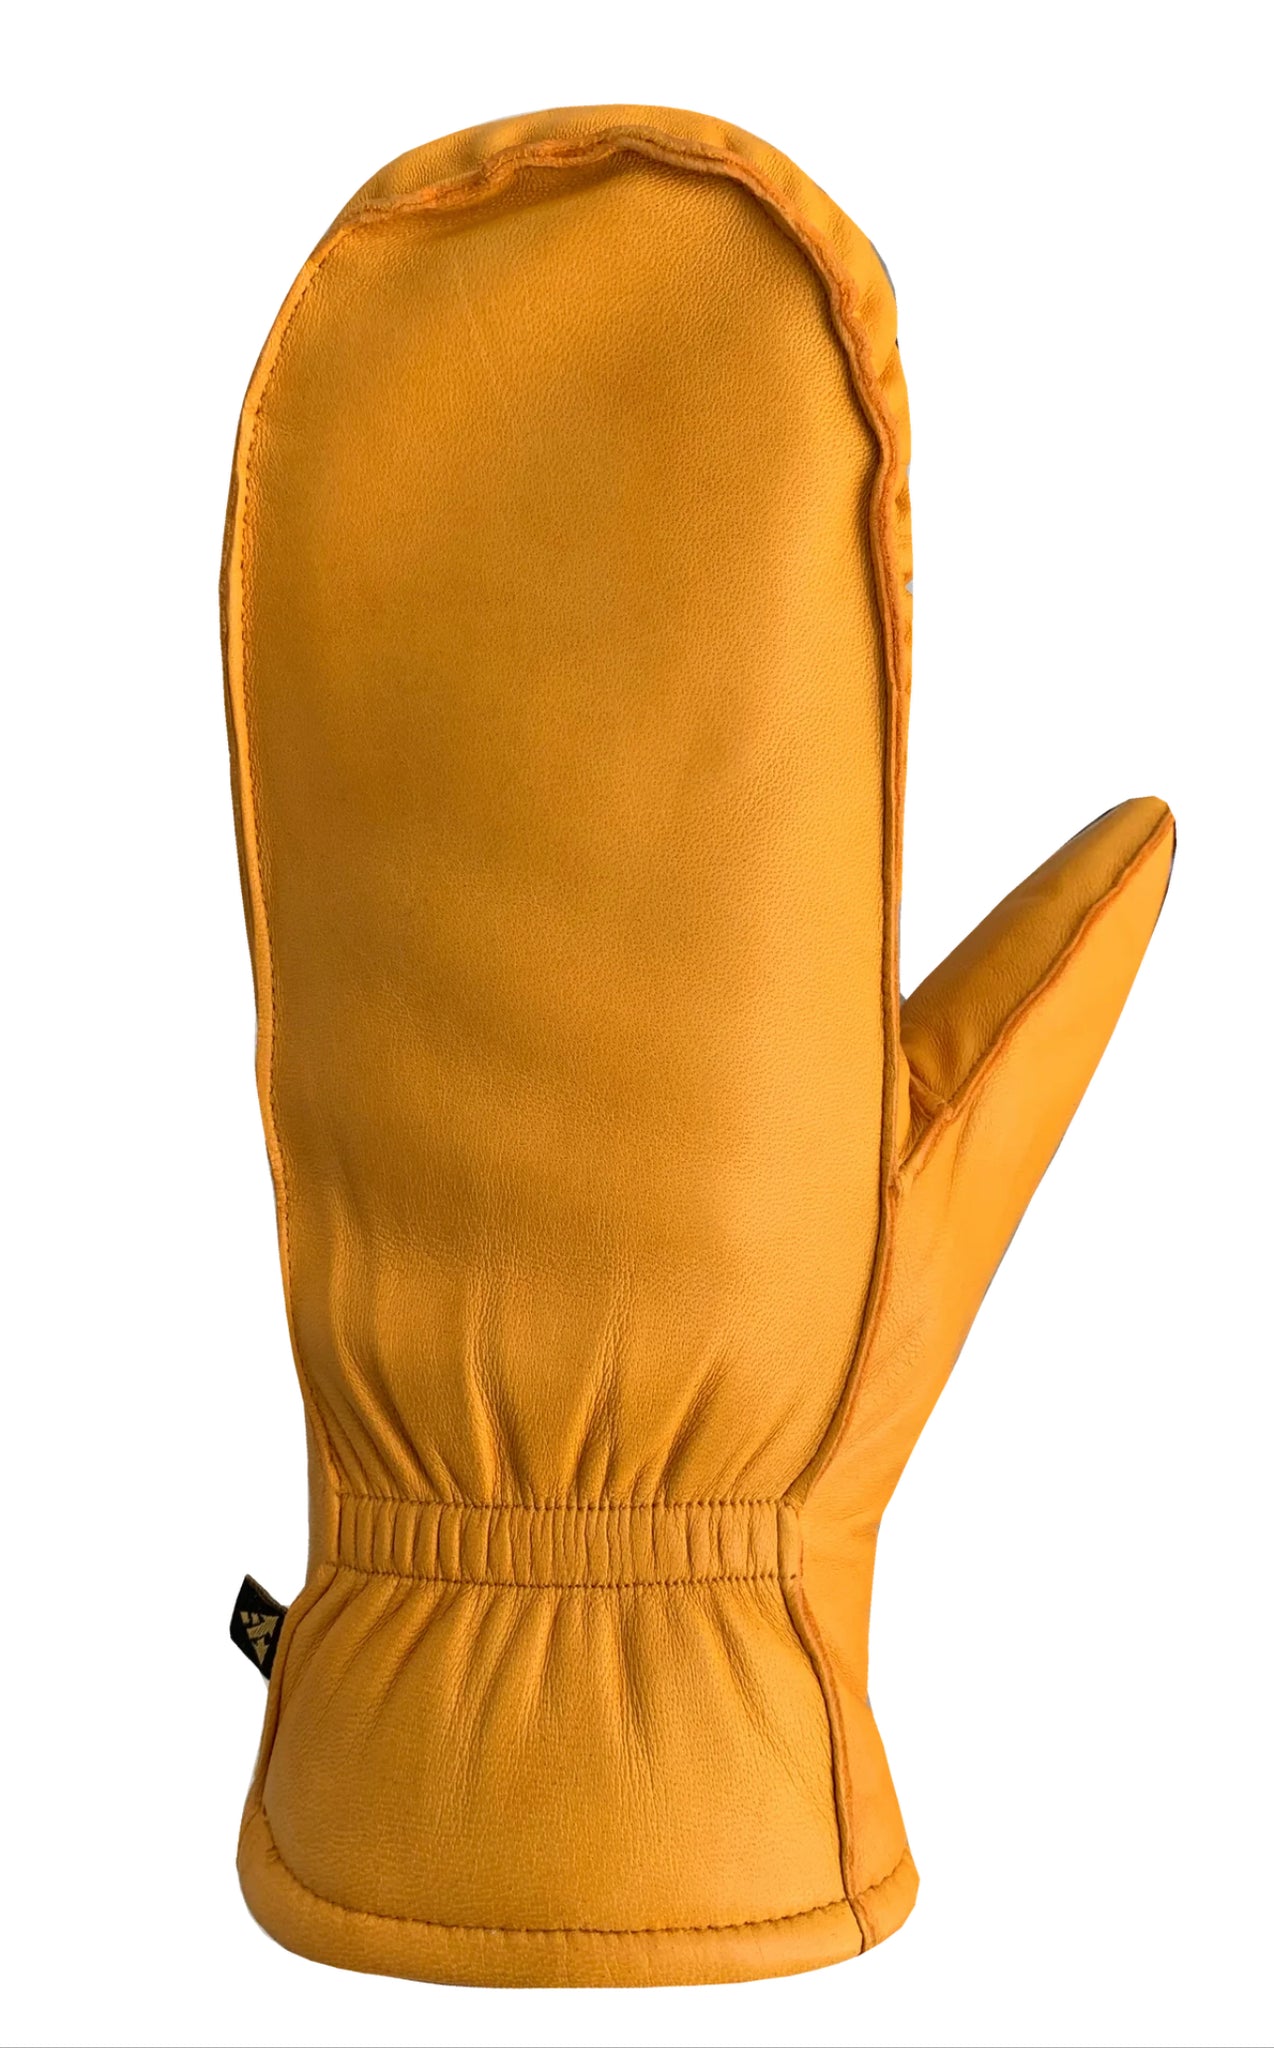 Auclair Kiva Moccasin Leather Fingermitts - Mustard